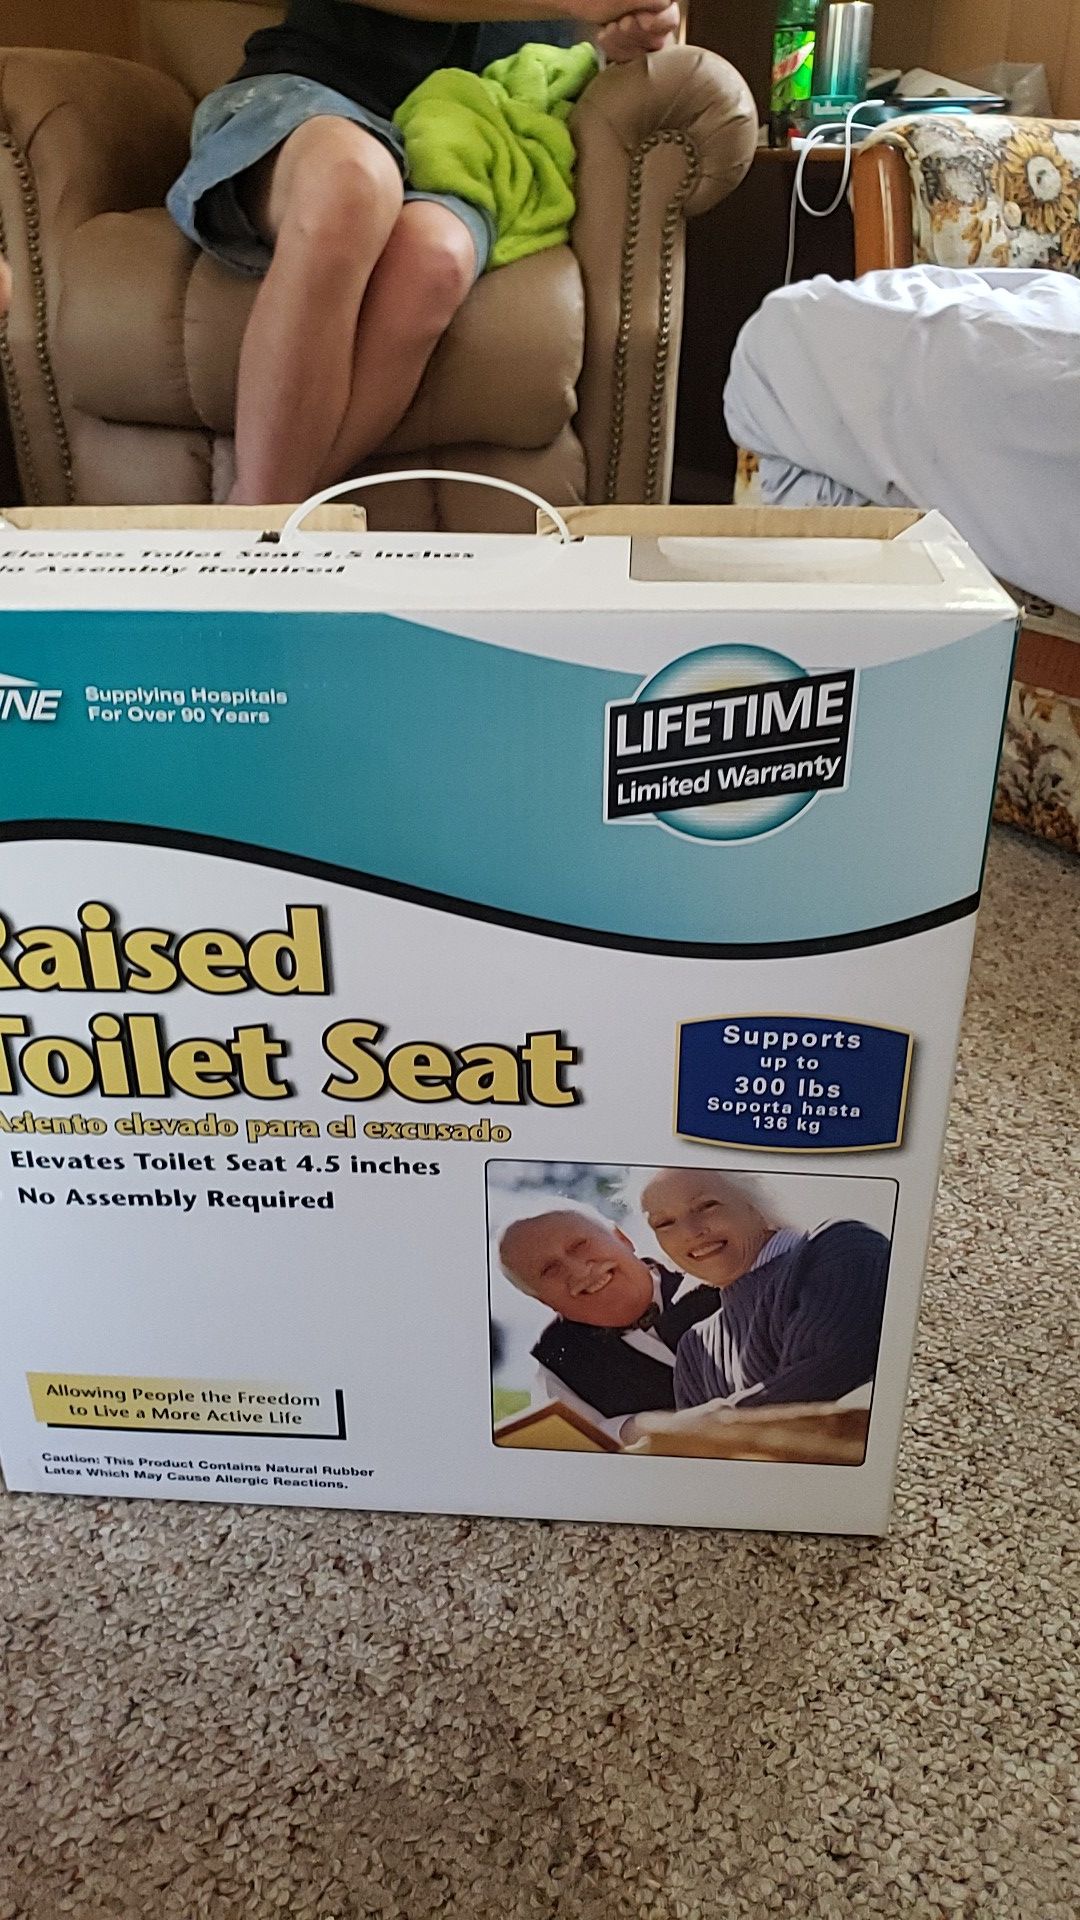 Medline raised toilet seat